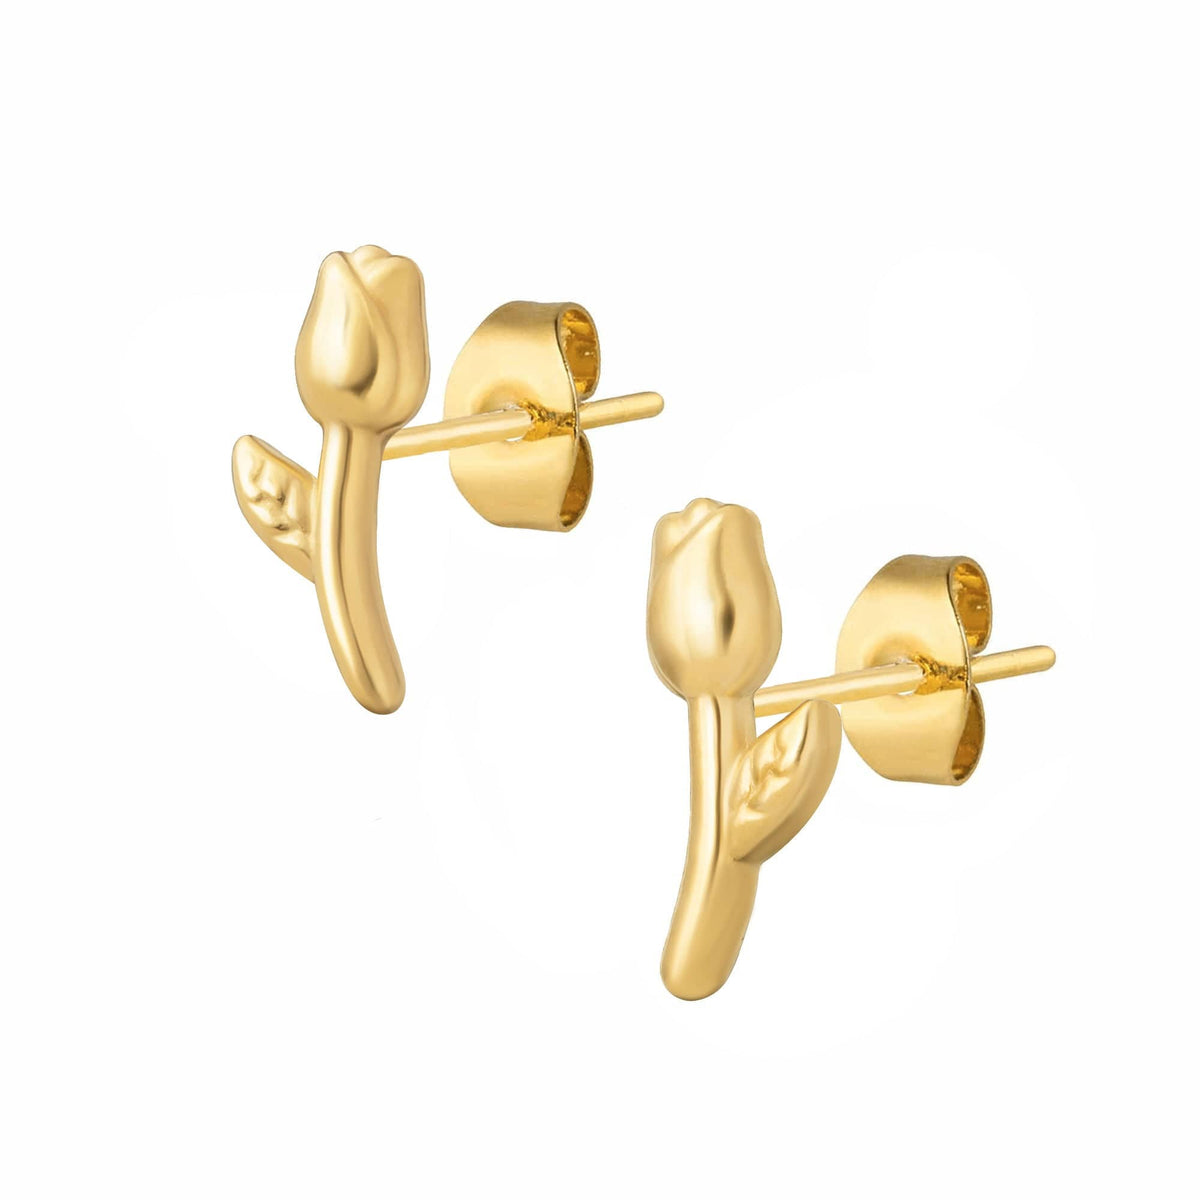 BohoMoon Stainless Steel Dainty Rose Stud Earrings Gold